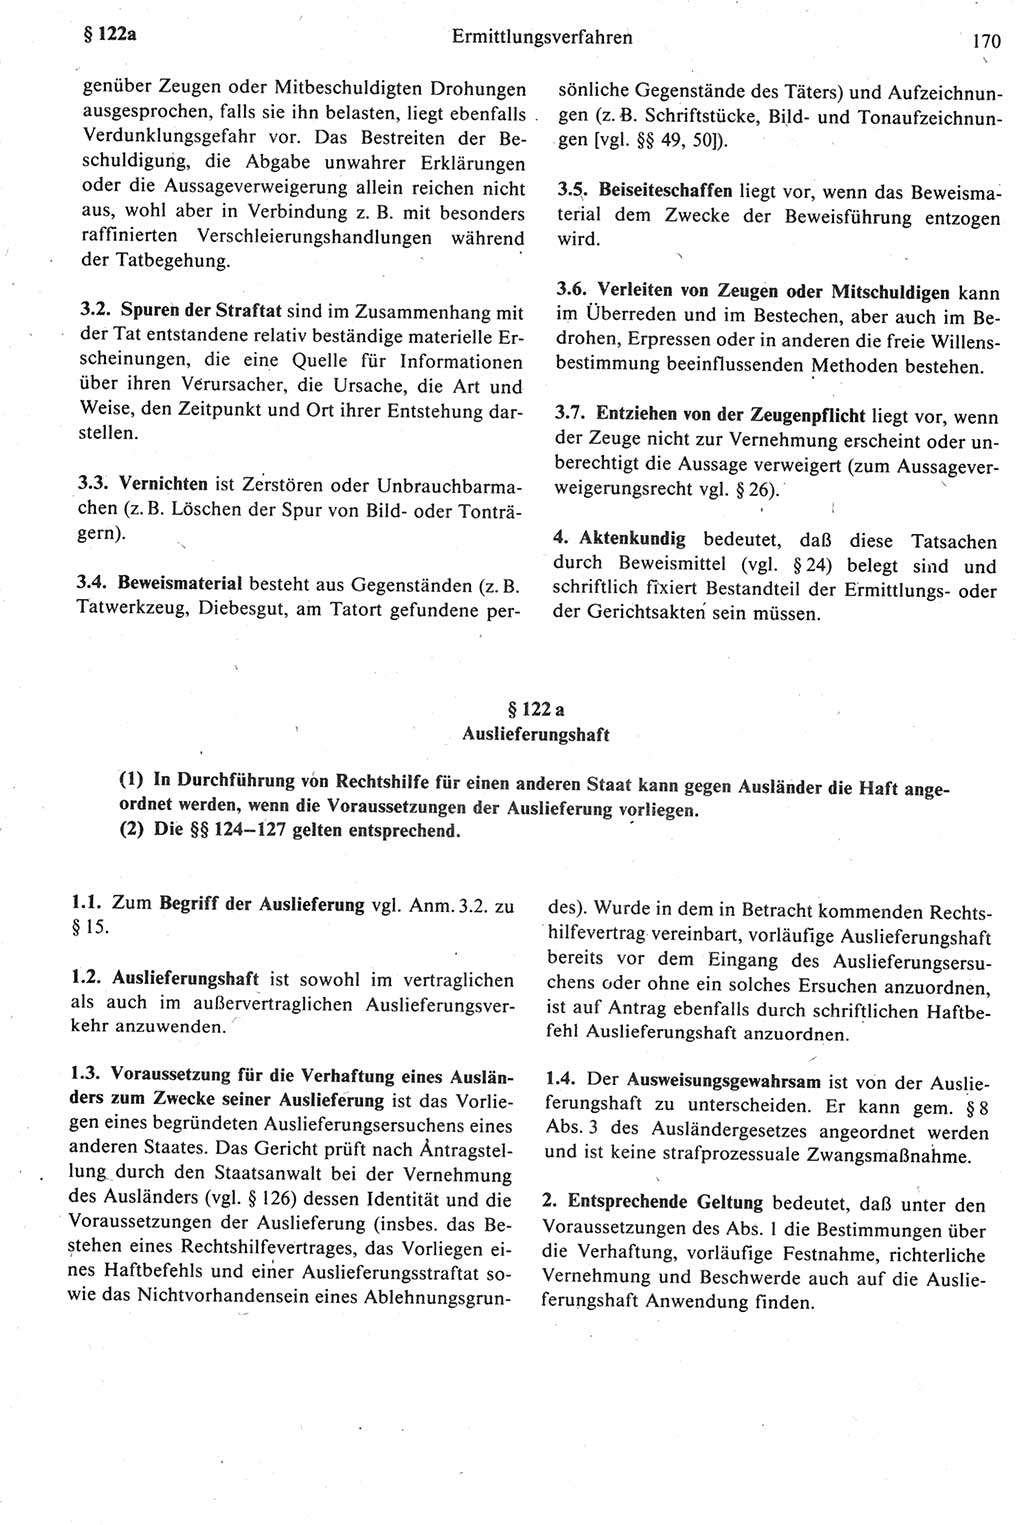 Strafprozeßrecht der DDR [Deutsche Demokratische Republik], Kommentar zur Strafprozeßordnung (StPO) 1987, Seite 170 (Strafprozeßr. DDR Komm. StPO 1987, S. 170)